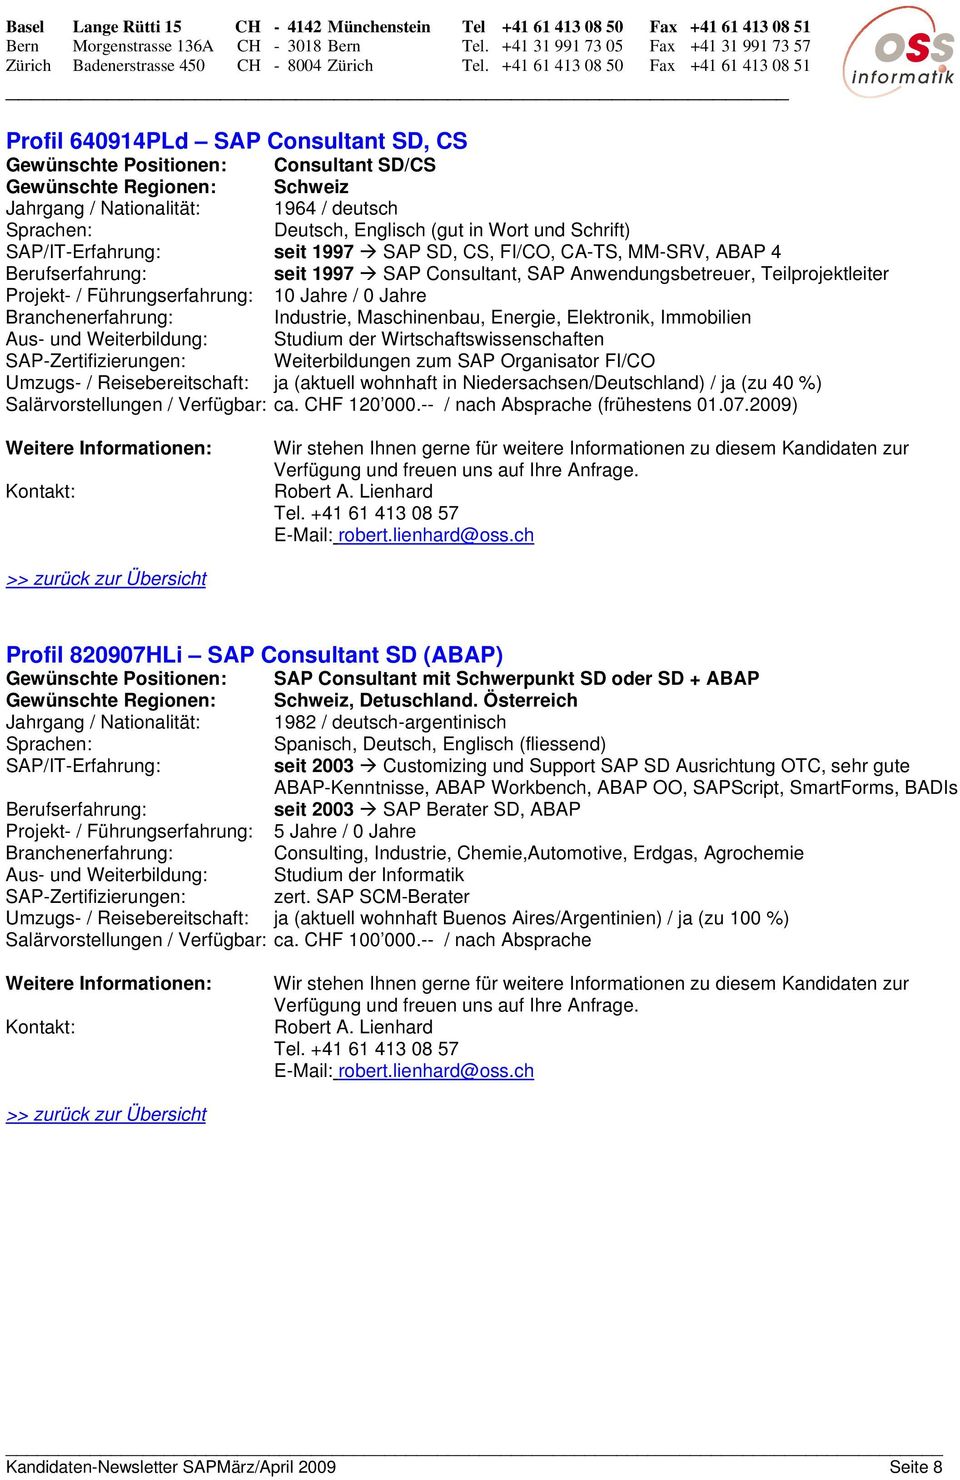 Weiterbildung: Studium der Wirtschaftswissenschaften SAP-Zertifizierungen: Weiterbildungen zum SAP Organisator FI/CO Umzugs- / Reisebereitschaft: ja (aktuell wohnhaft in Niedersachsen/Deutschland) /